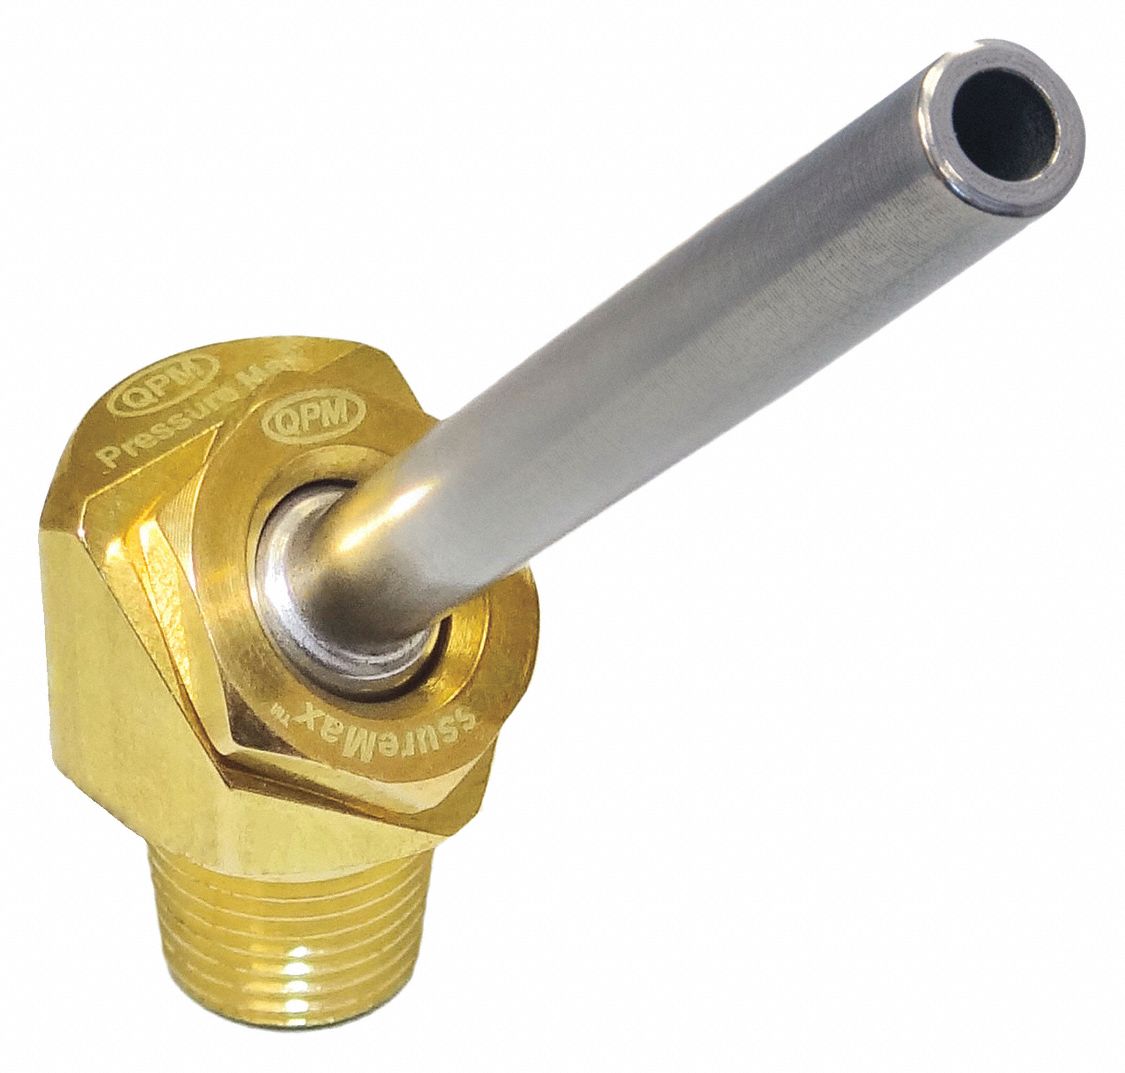 Coolant Nozzle: PressureMax, Brass, 0.12 in Orifice Dia., 1,000 psi Max. PSI, 63/64 in Lg, 5 PK